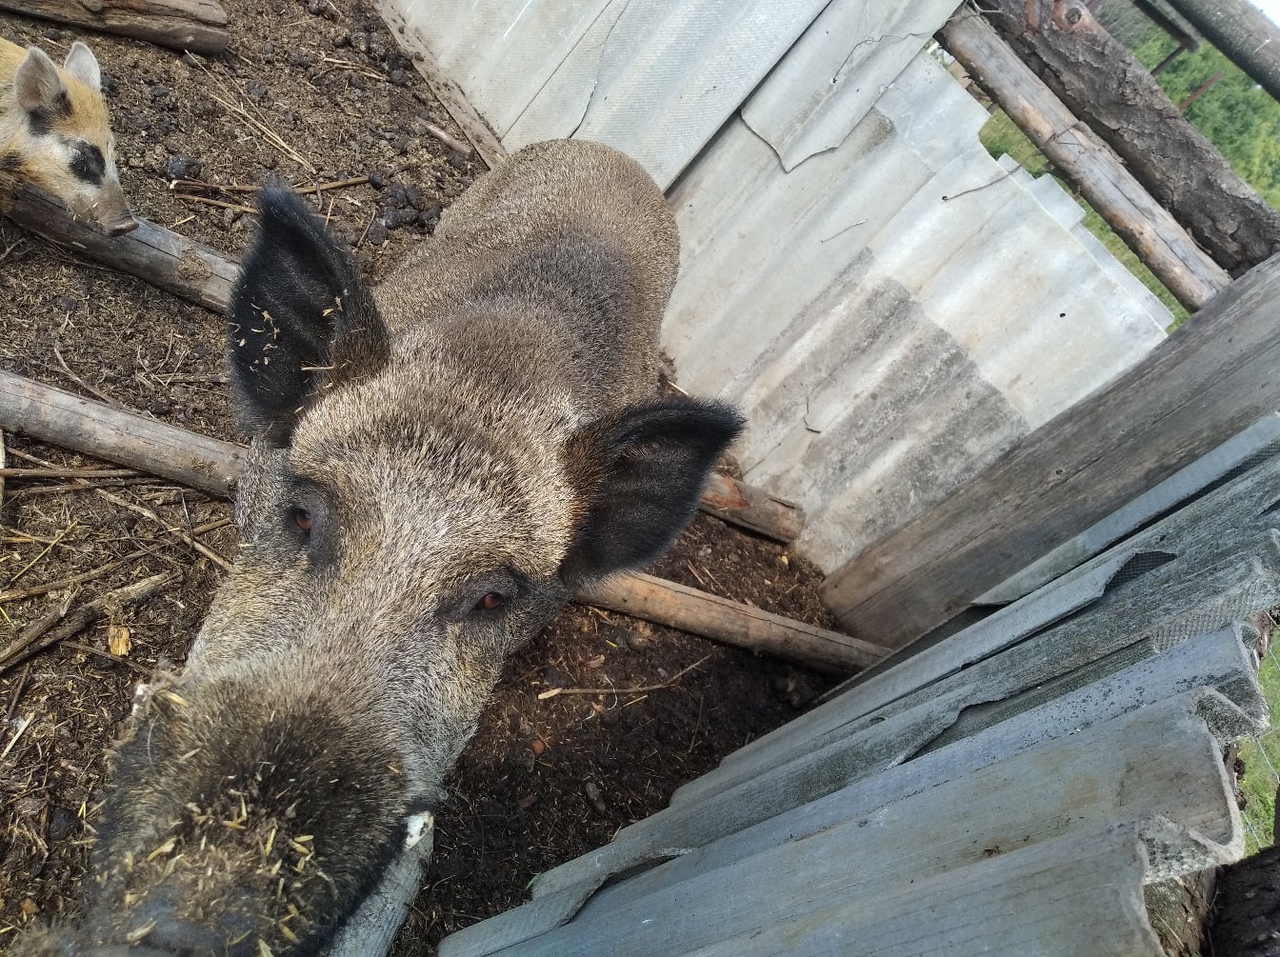  Из-за африканской чумы свиней в Санчурском районе ввели карантин